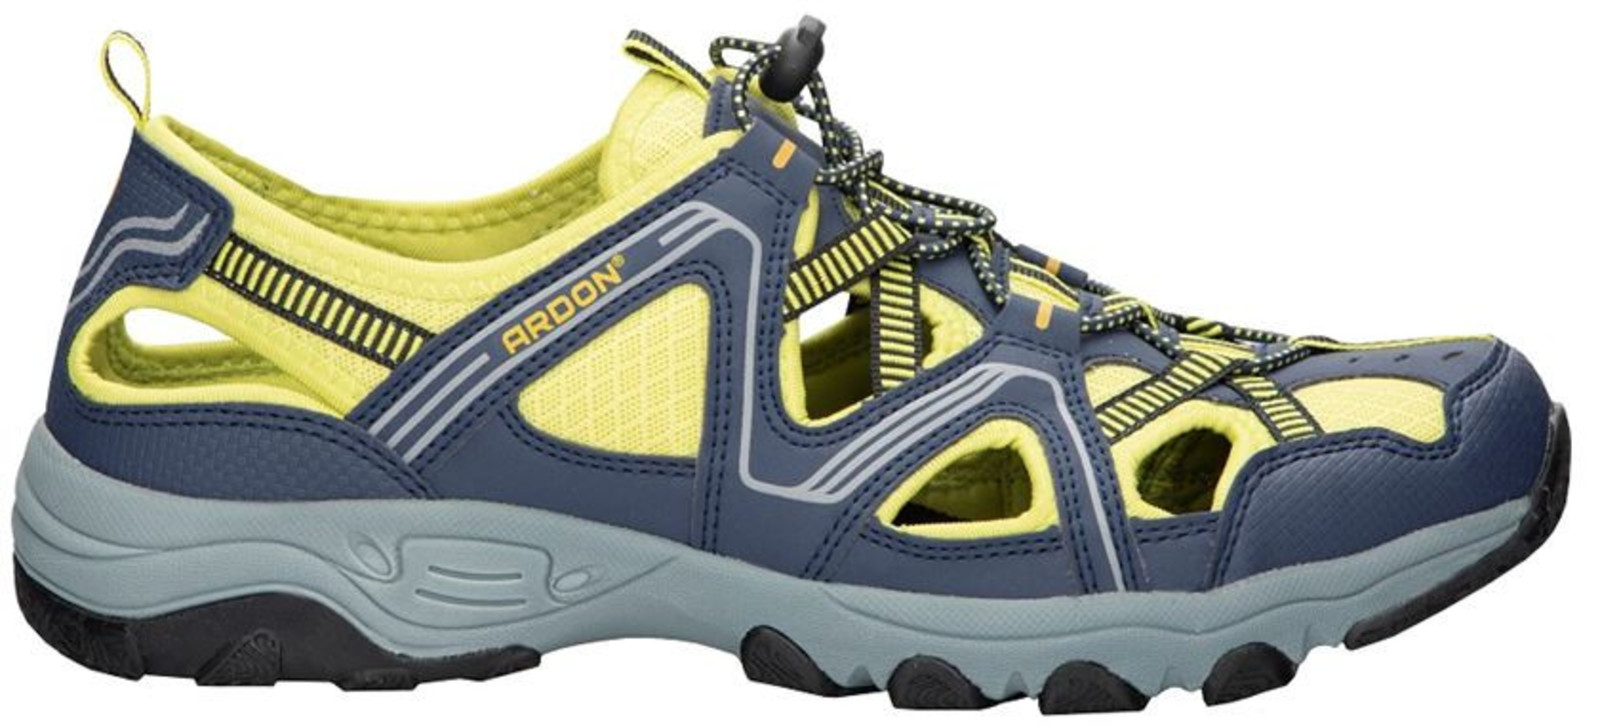 Trekové sandále Ardon Strand - veľkosť: 38, farba: modrá/žltá